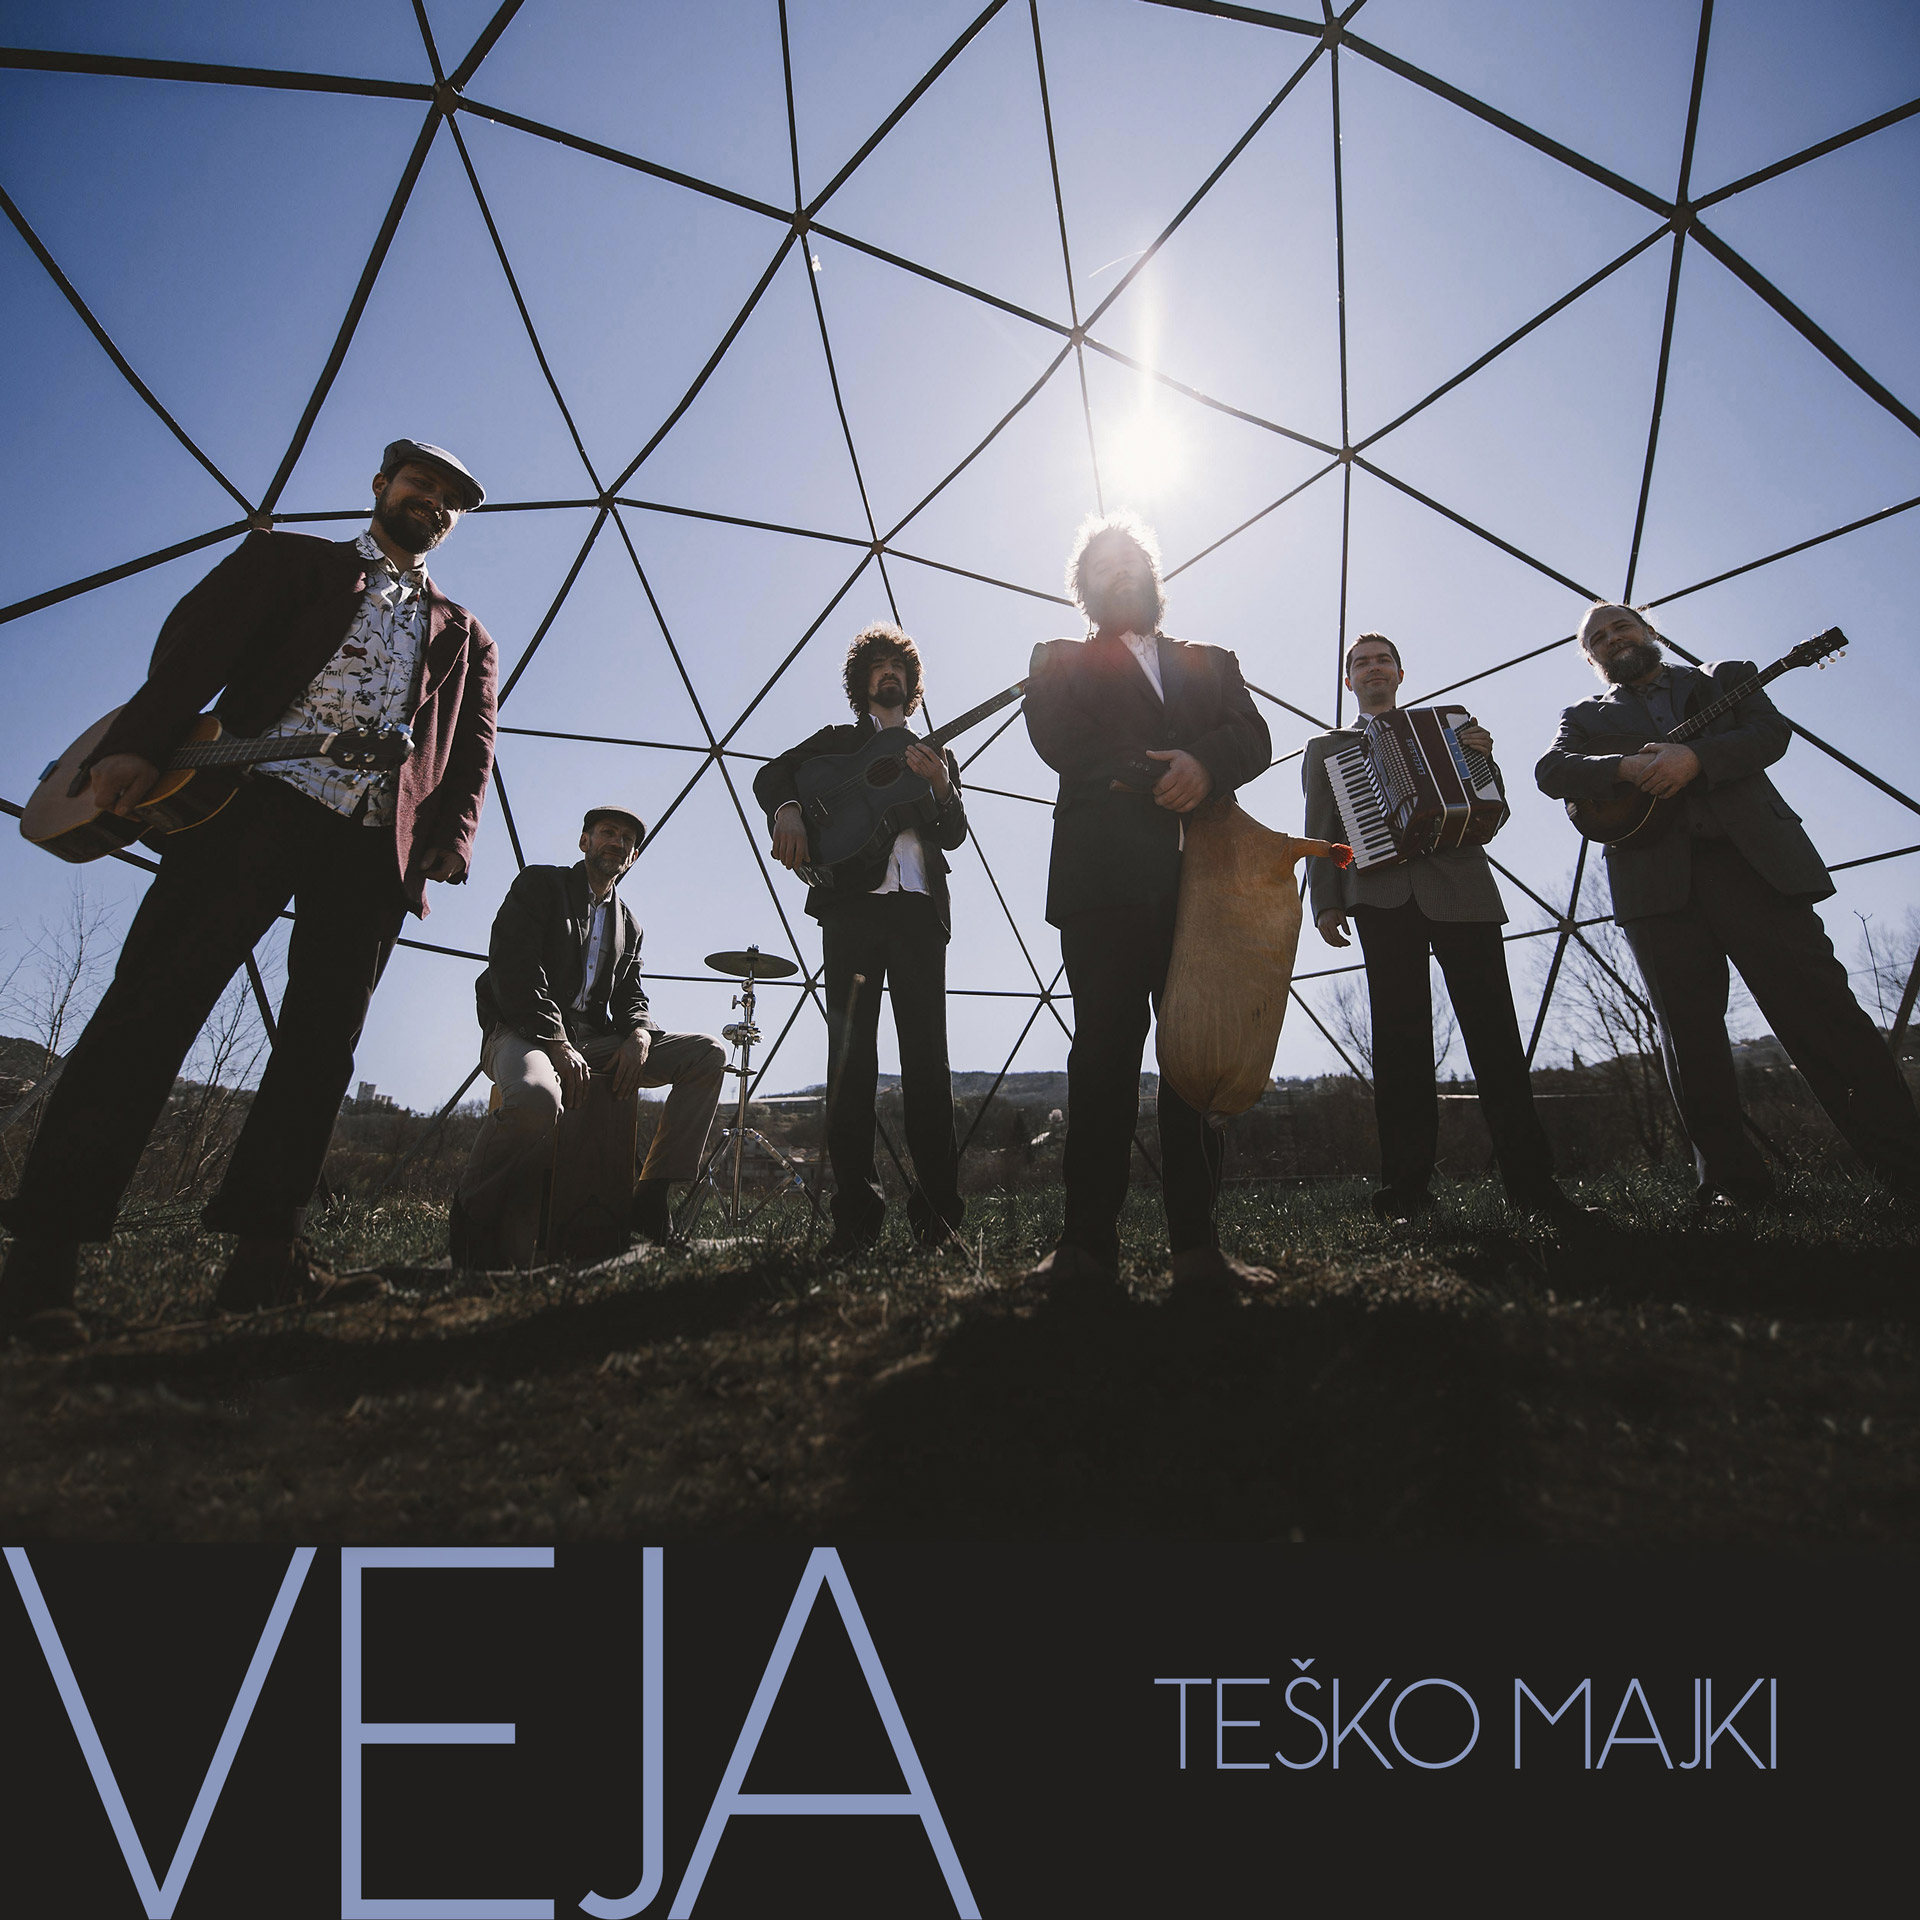 Veja_1_Tesko majki_cover